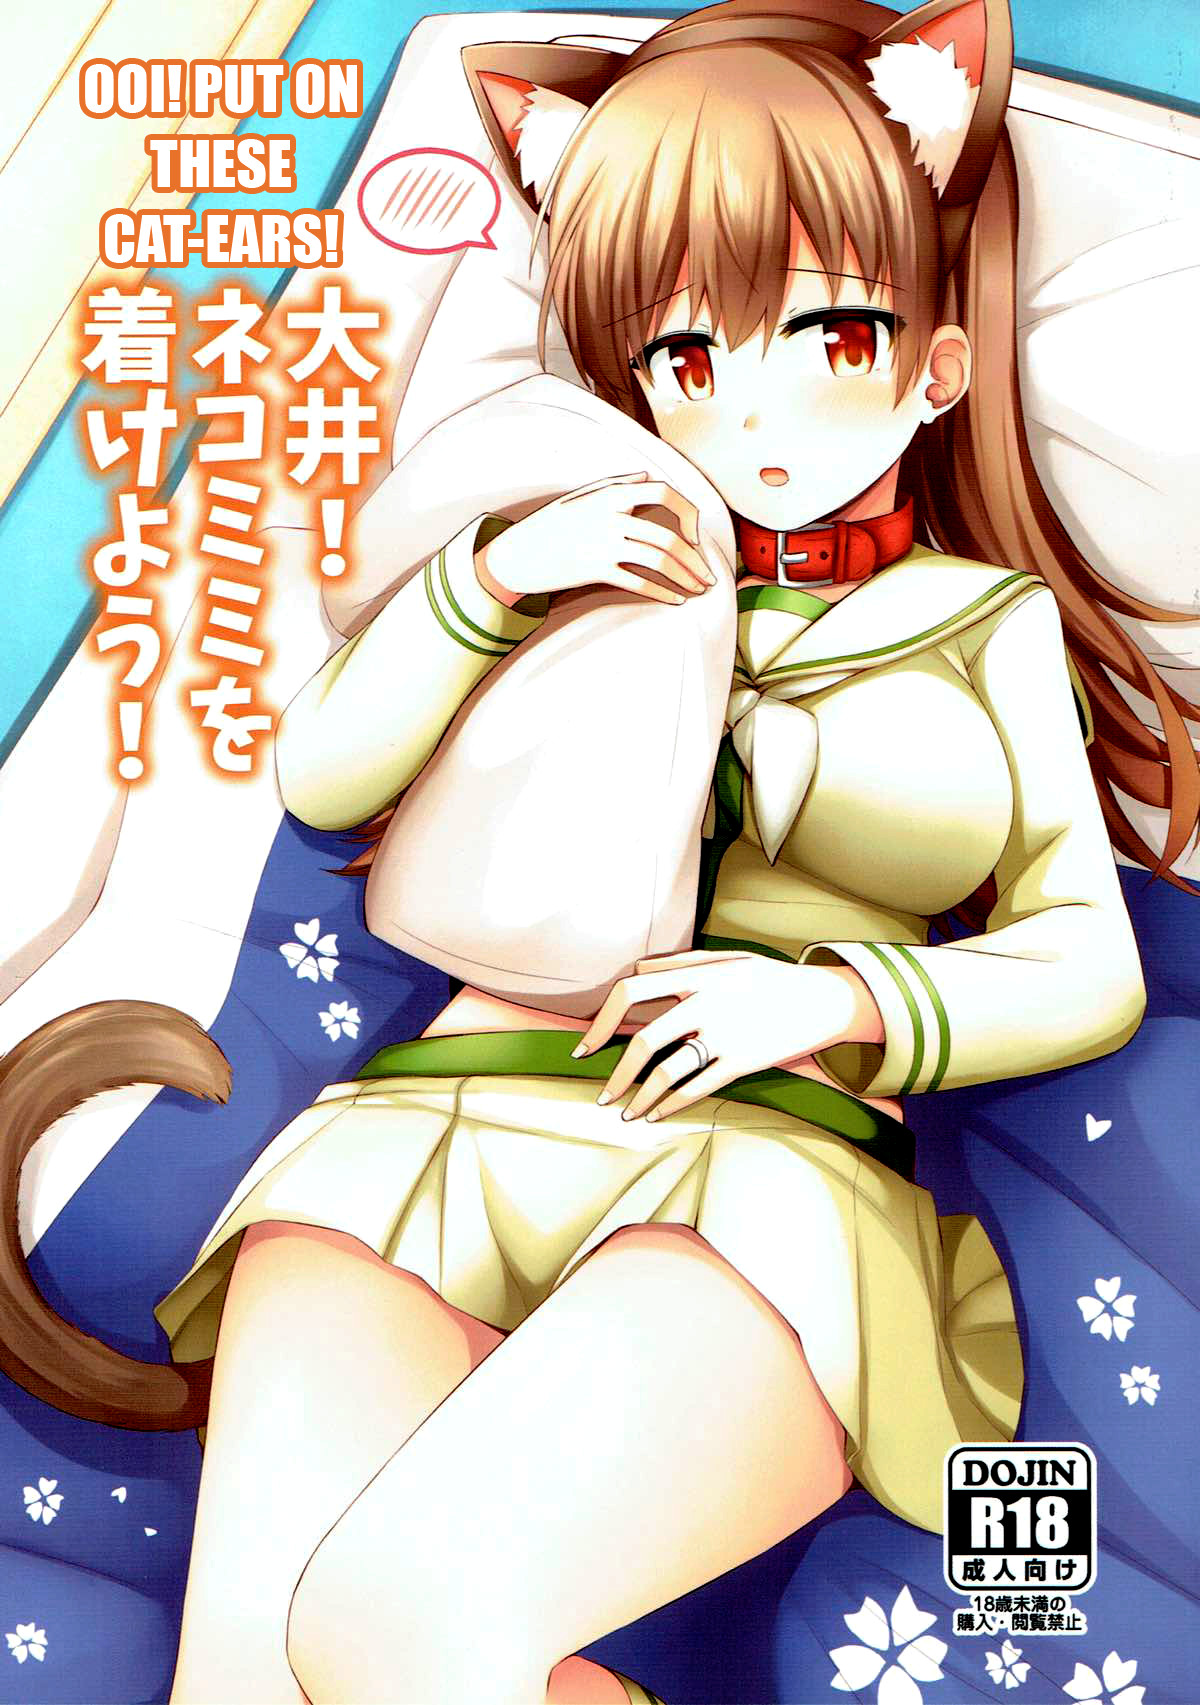 Hentai Manga Comic-Ooi! Put On These Cat Ears!-Read-1